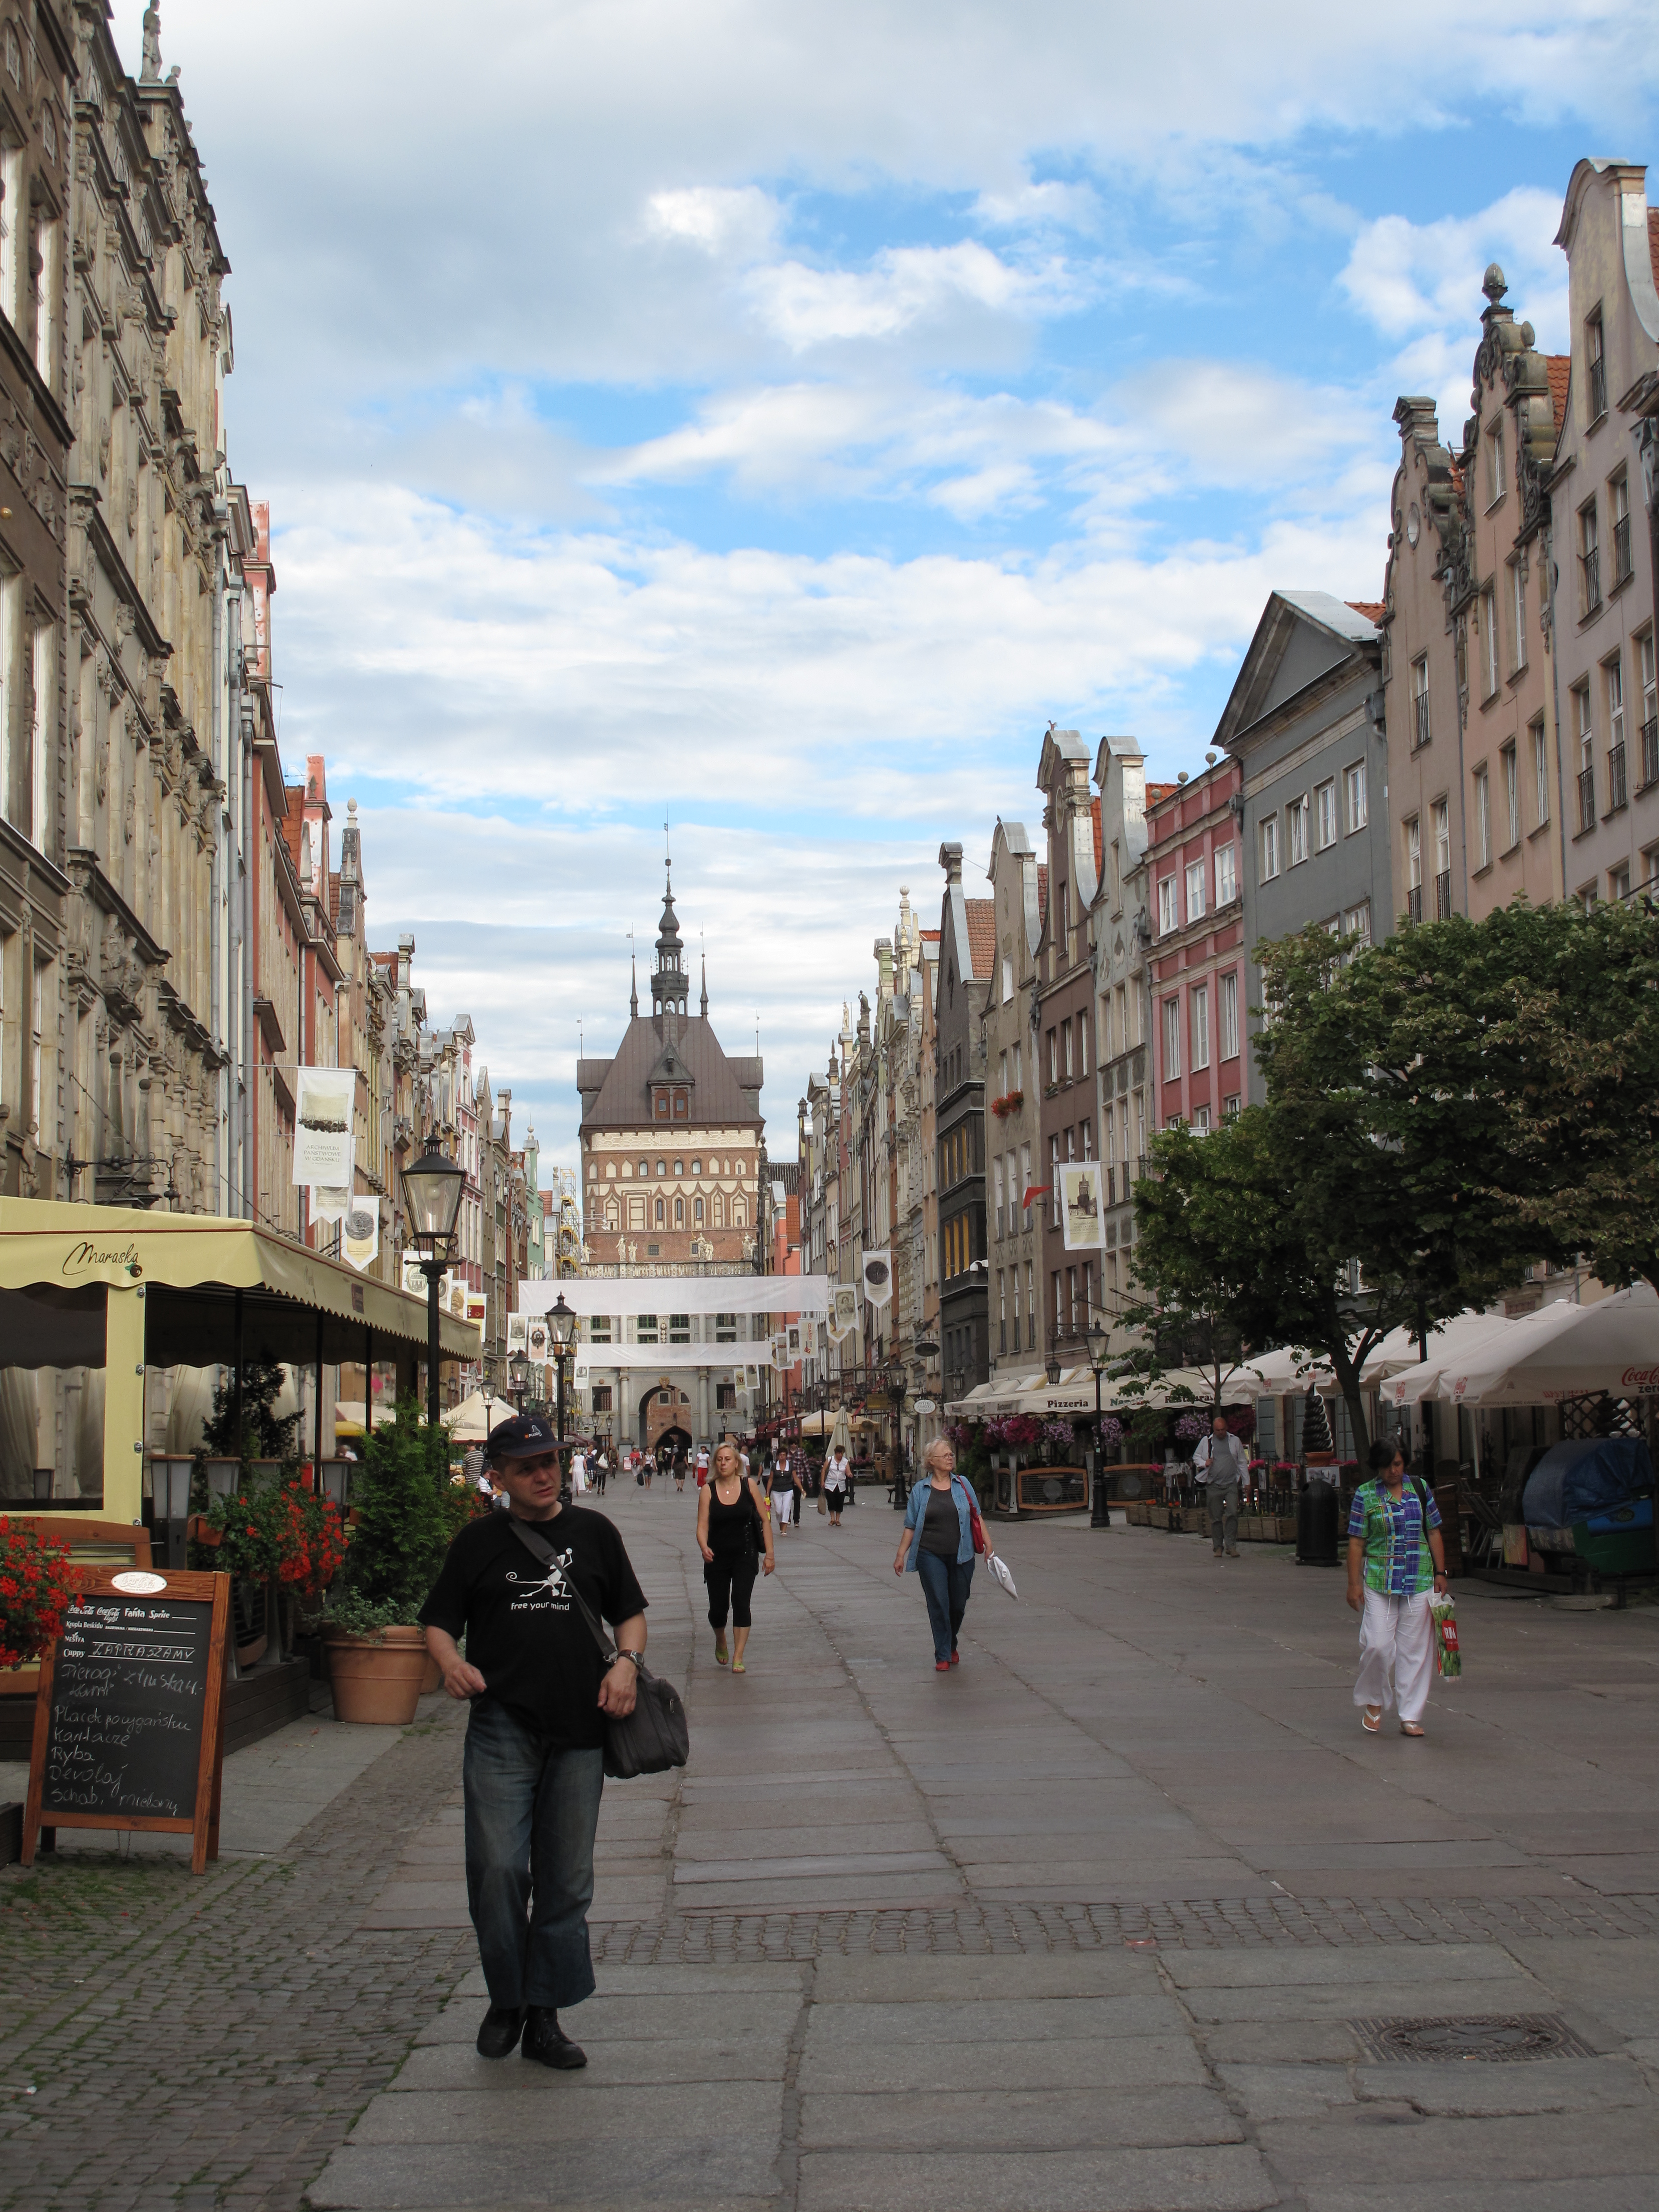 File:Gdańsk, Długa Street, view.JPG - Wikimedia Commons